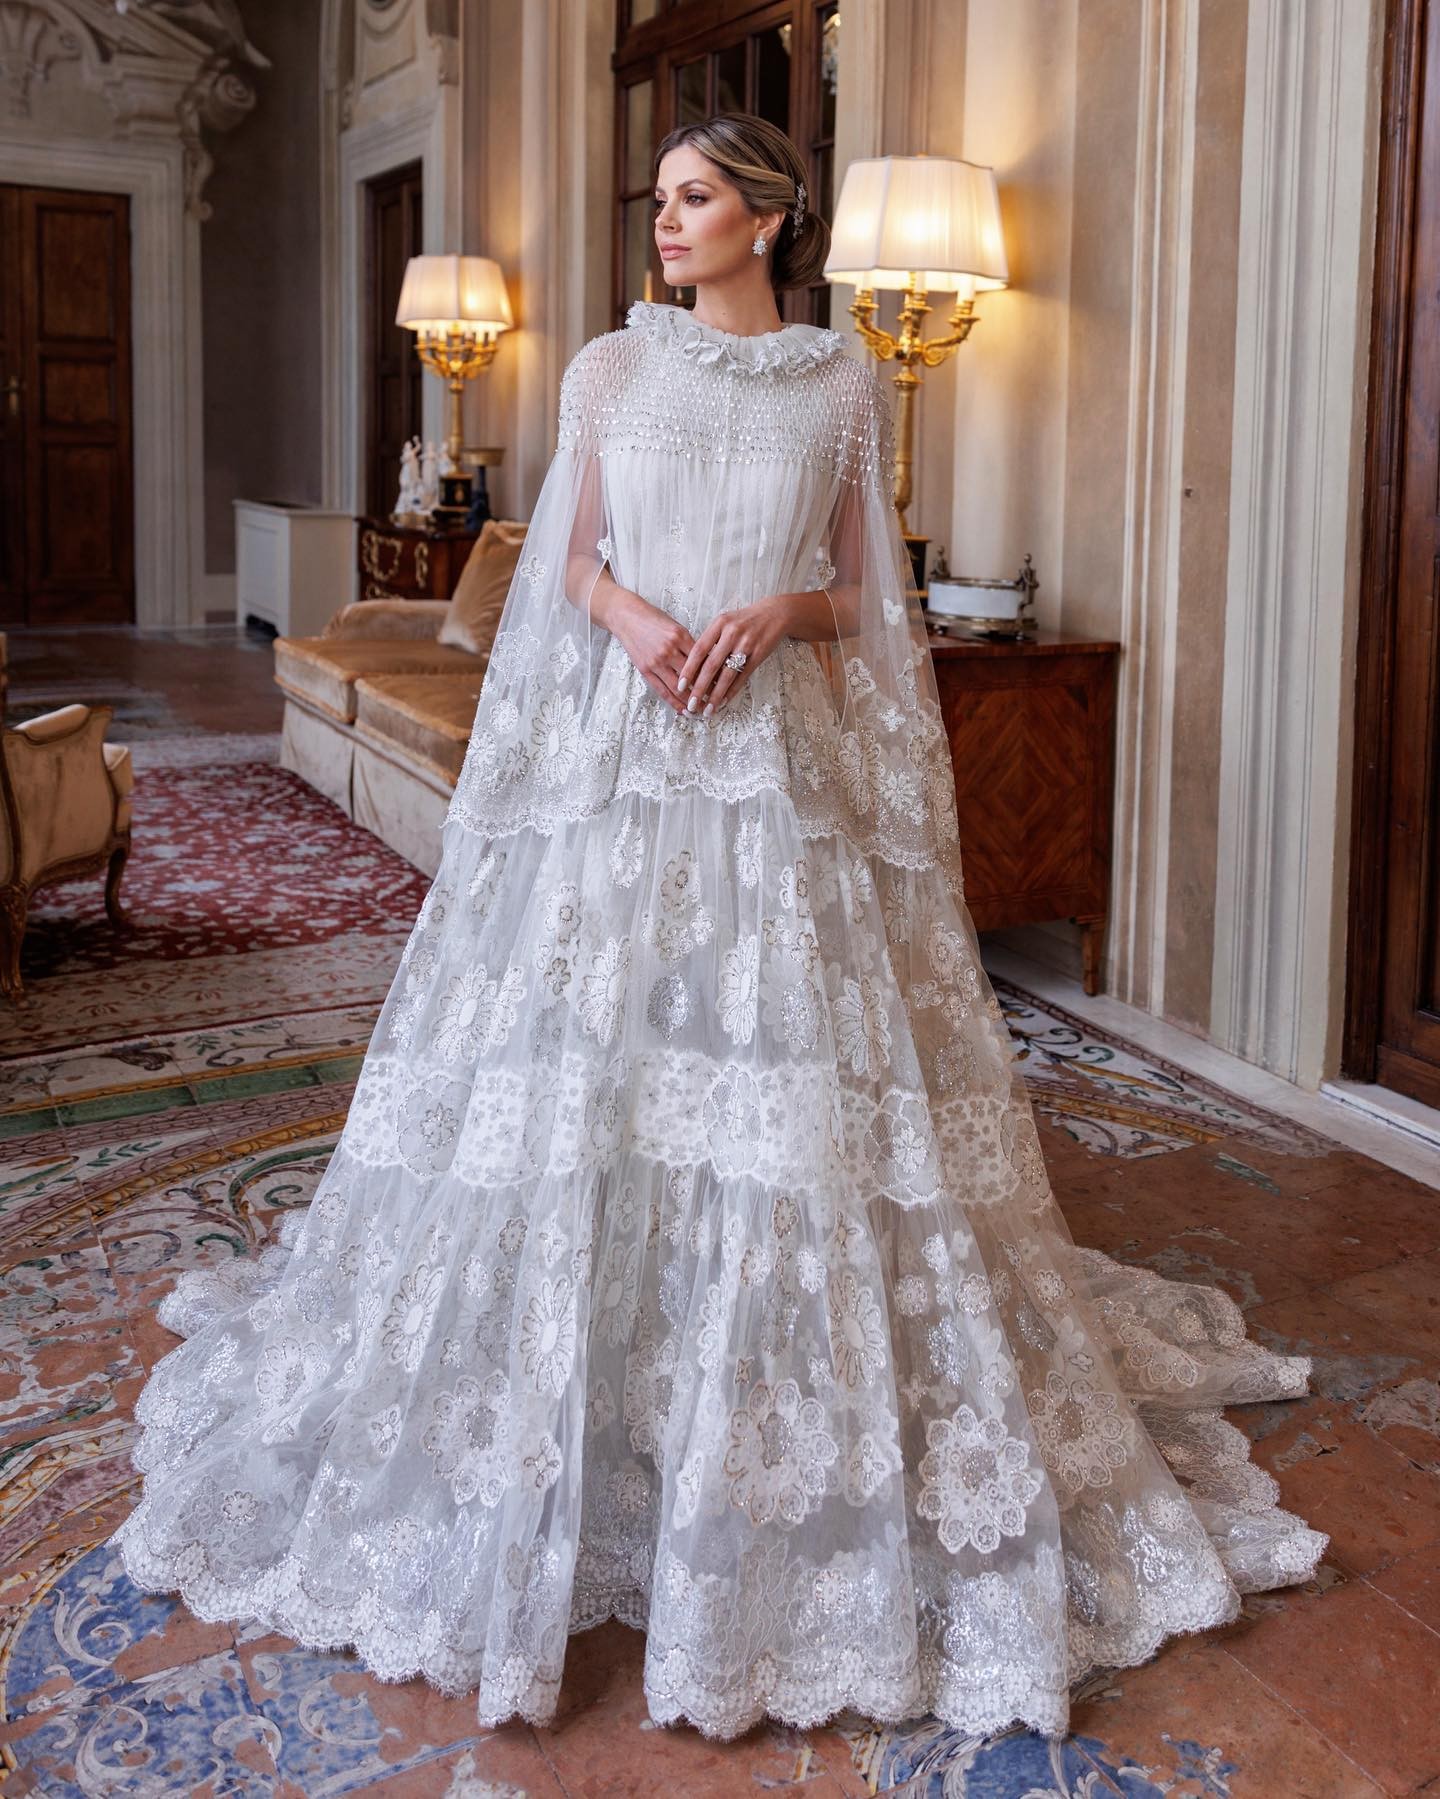 Lala Rudge se casa com vestido da marca de alta costuma Valentino (Foto: Reprodução / Instagram)